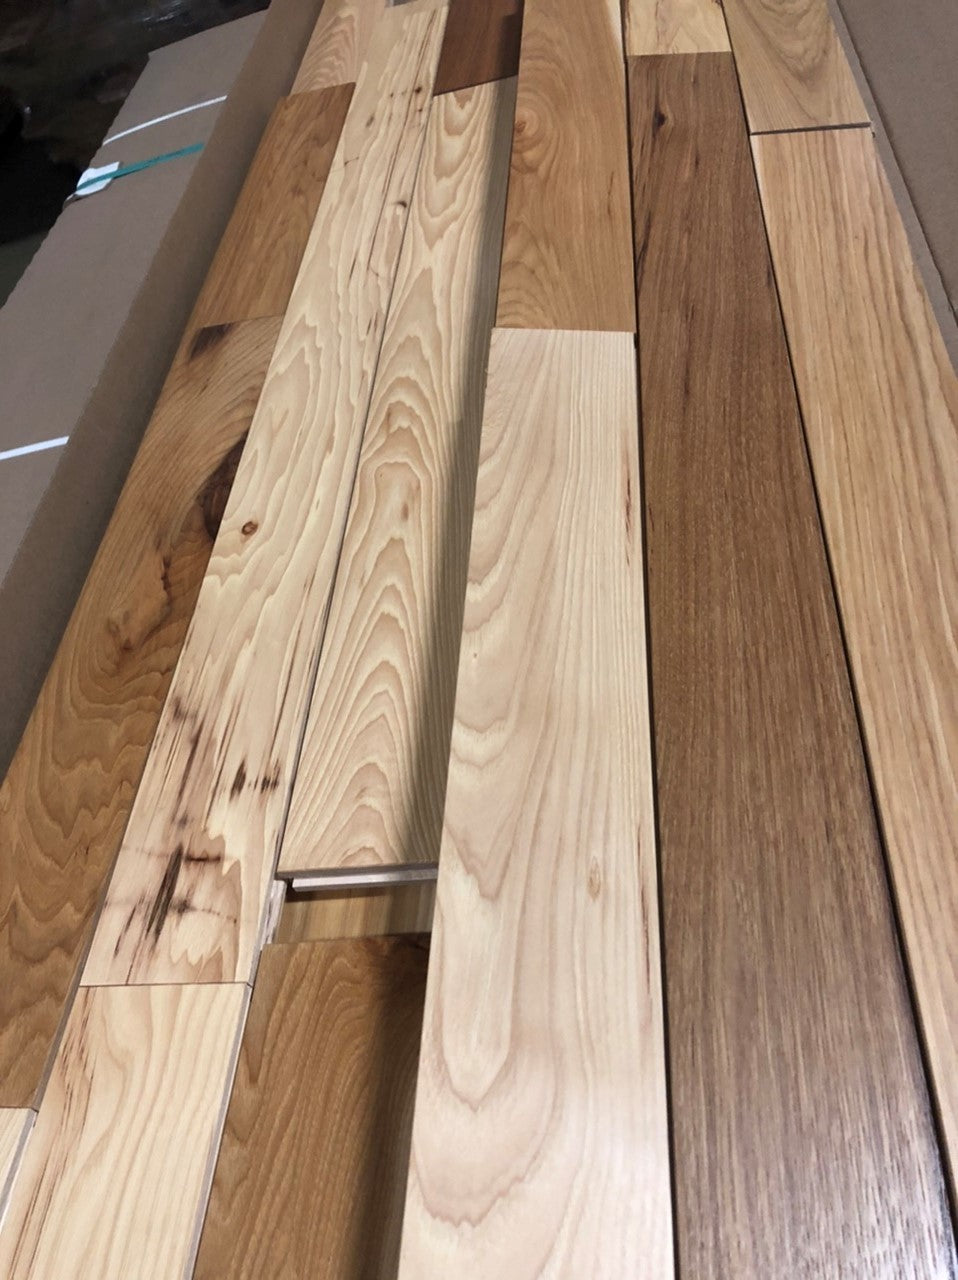 5 X 3 4 Prefinished Hickory Hardwood Flooring Hardwoods4less Com